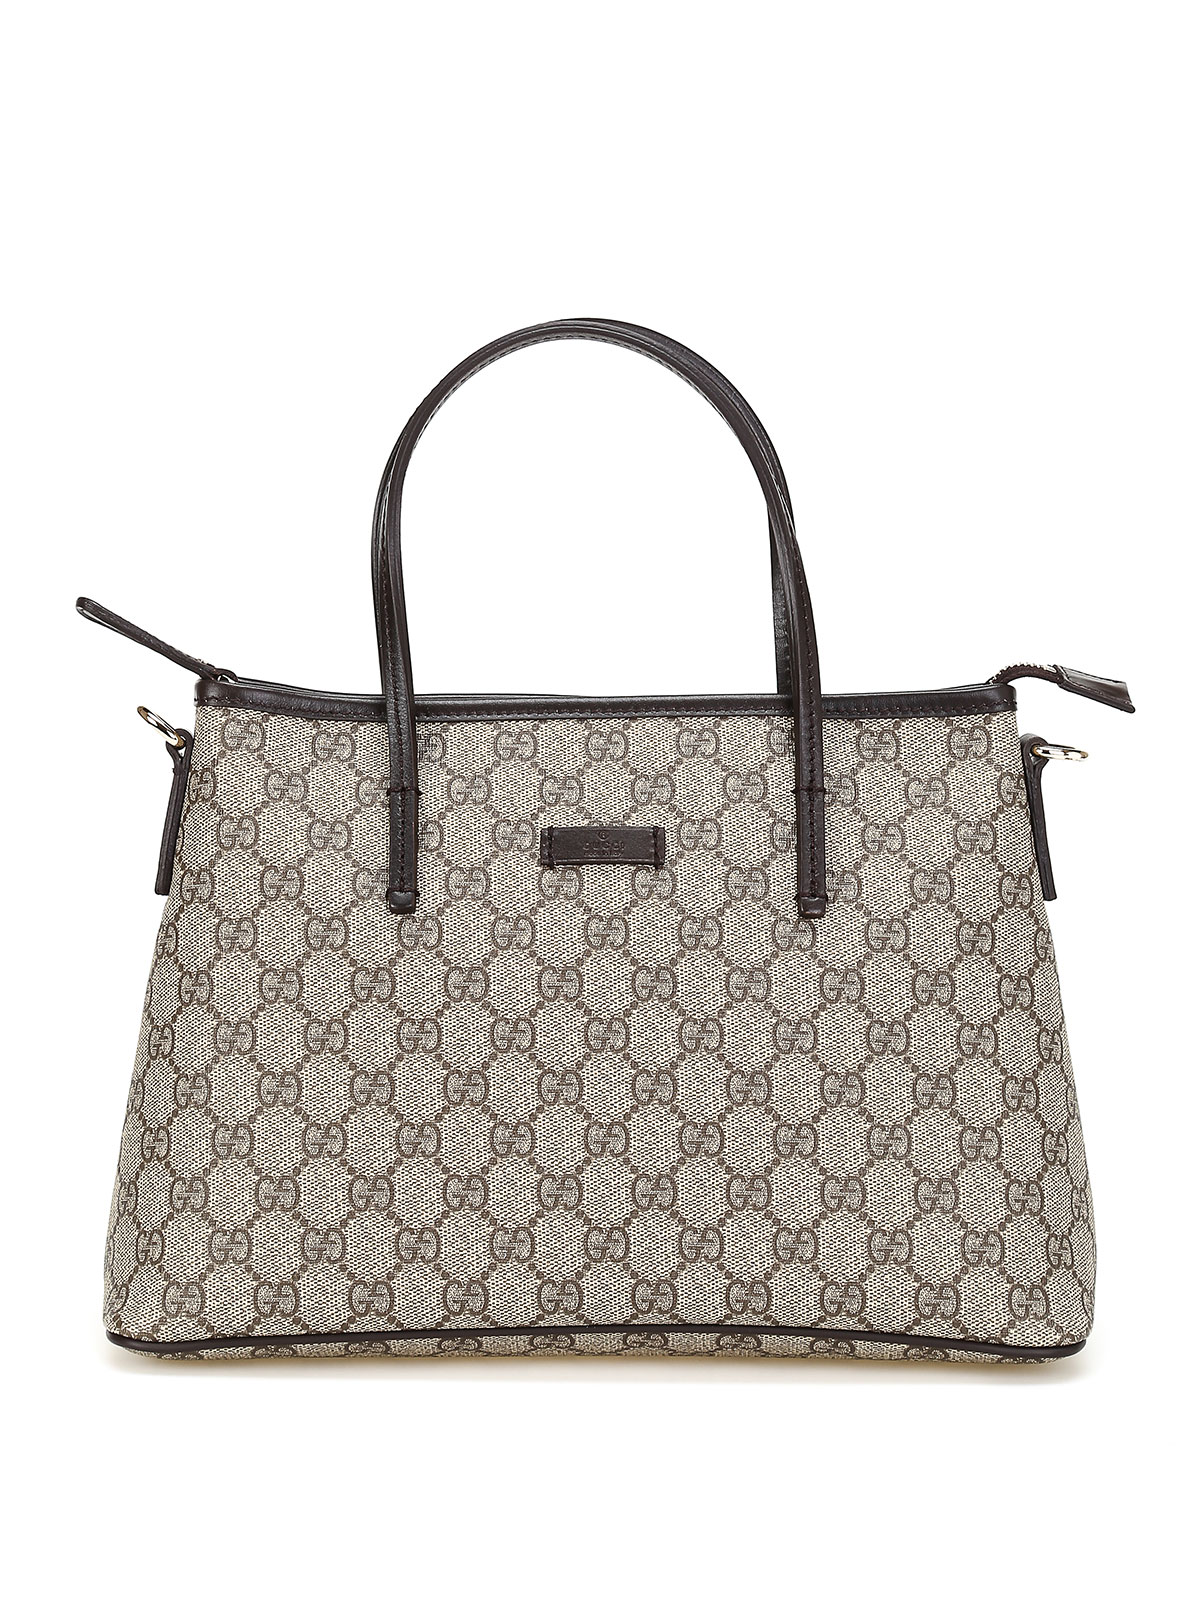 Gucci, GG Supreme Small Tote Bag